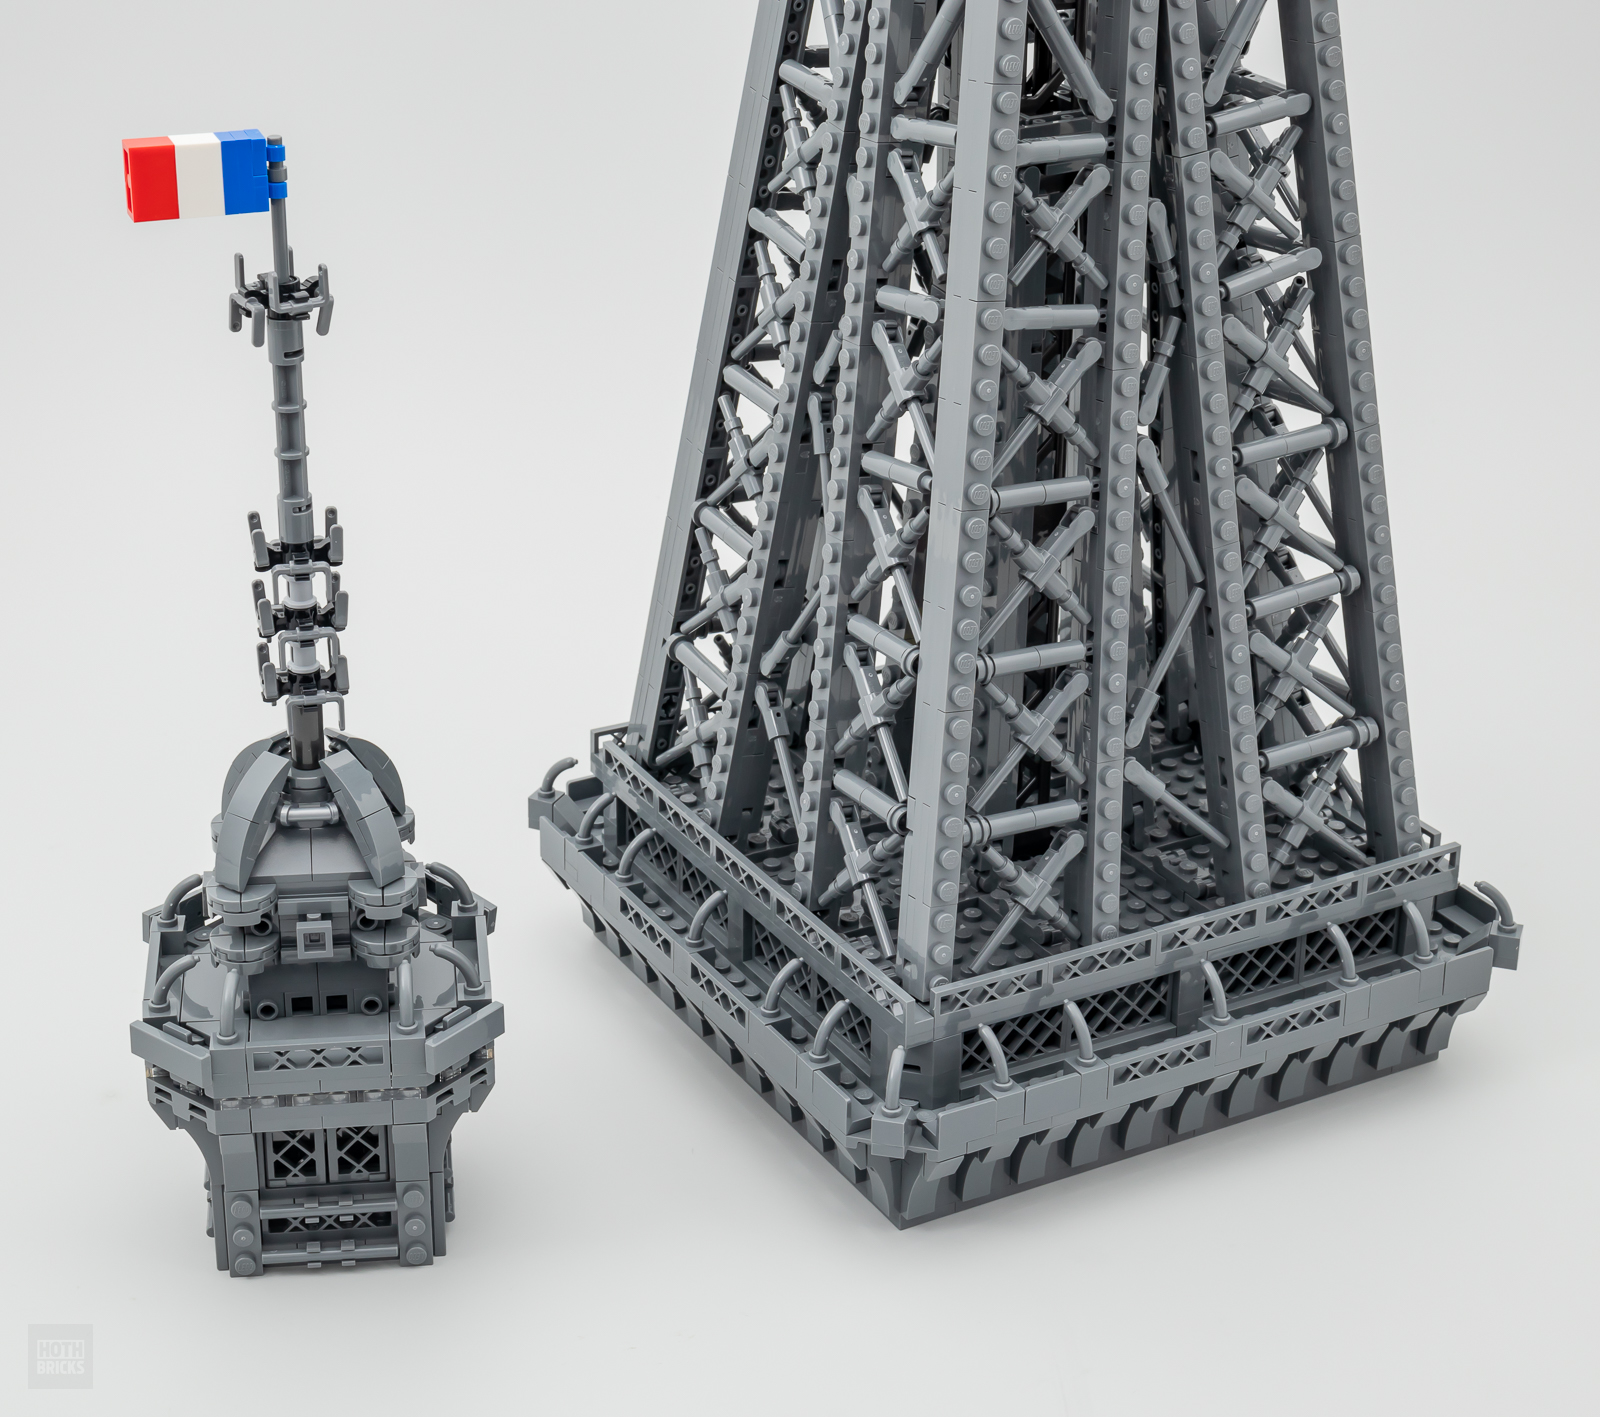 arbejder Vandret træ ▻ Hurtigt testet: LEGO ICONS 10307 Eiffeltårnet - HOTH BRICKS